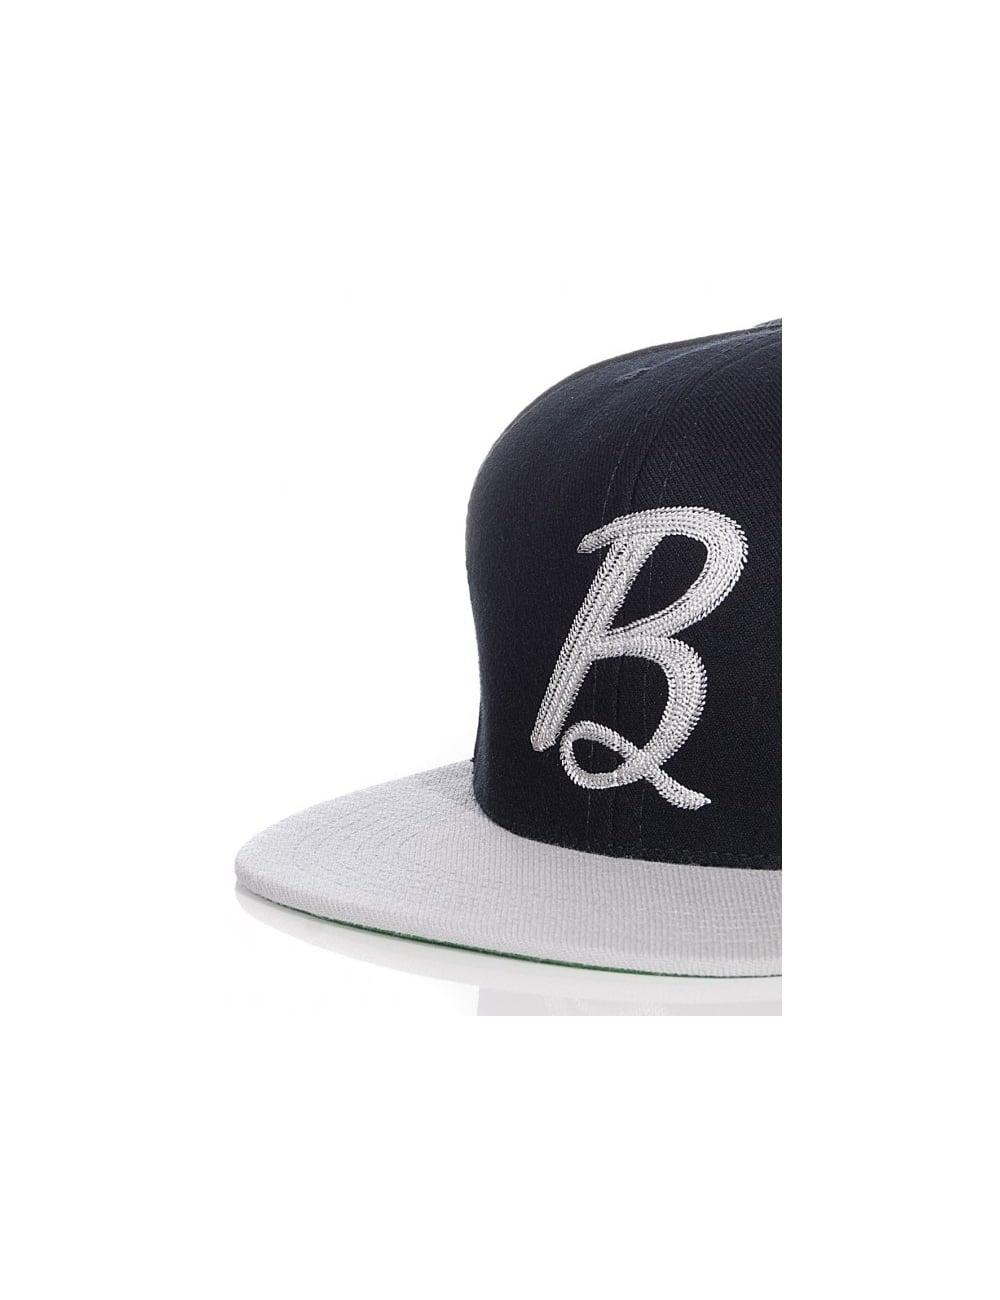 Black Script B Logo - Benny Gold Script B Snapback Cap